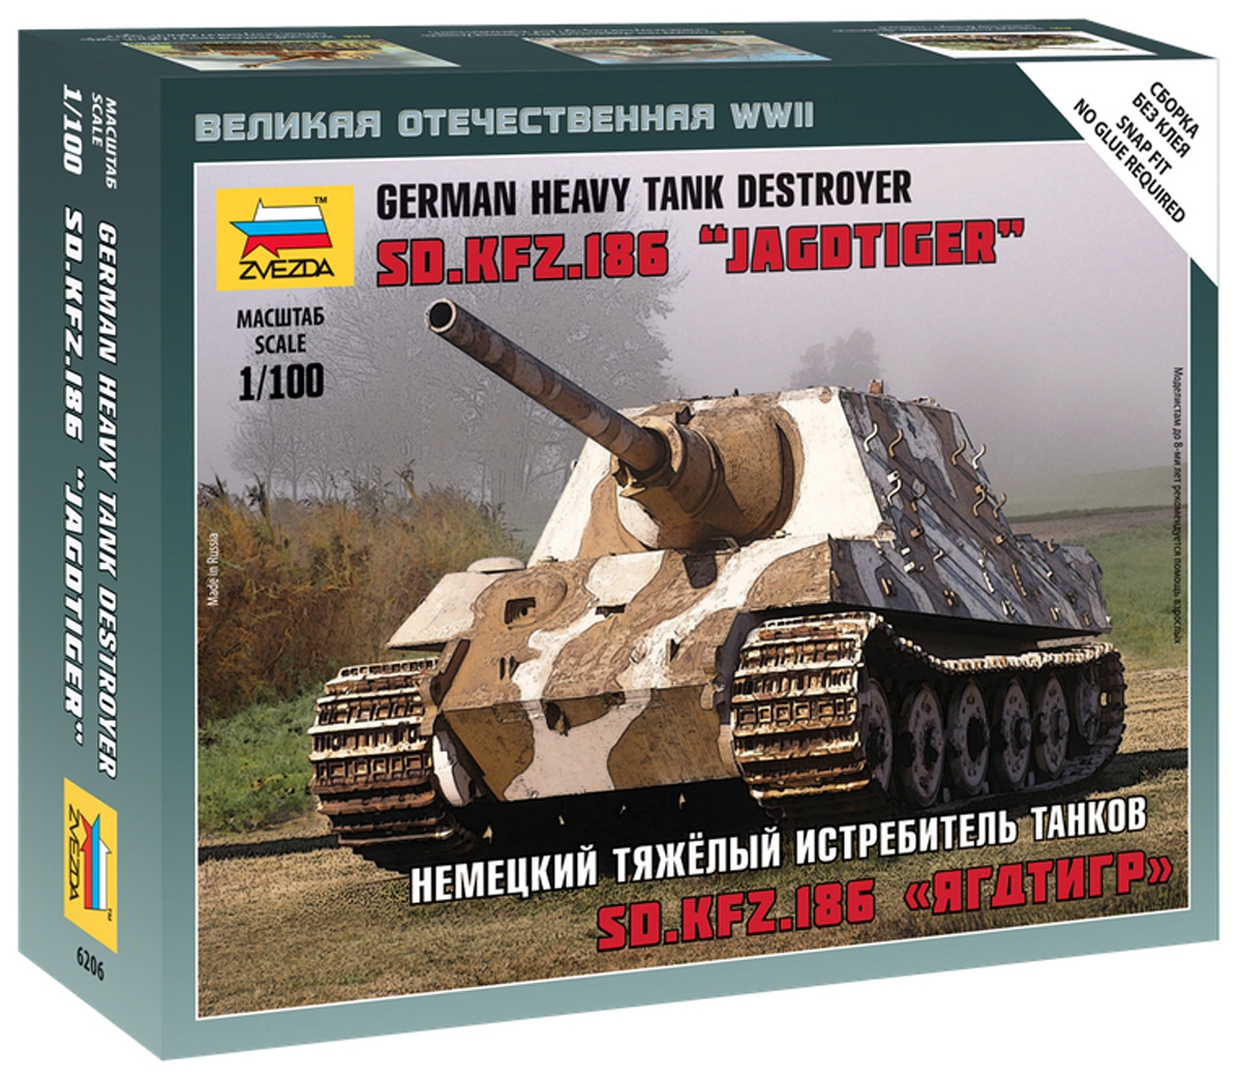 Иллюстрация 1 из 6 для Немецкий тяжёлый истребитель танков SD.KFZ.186 "Ягдтигр" (6206) | Лабиринт - игрушки. Источник: Лабиринт